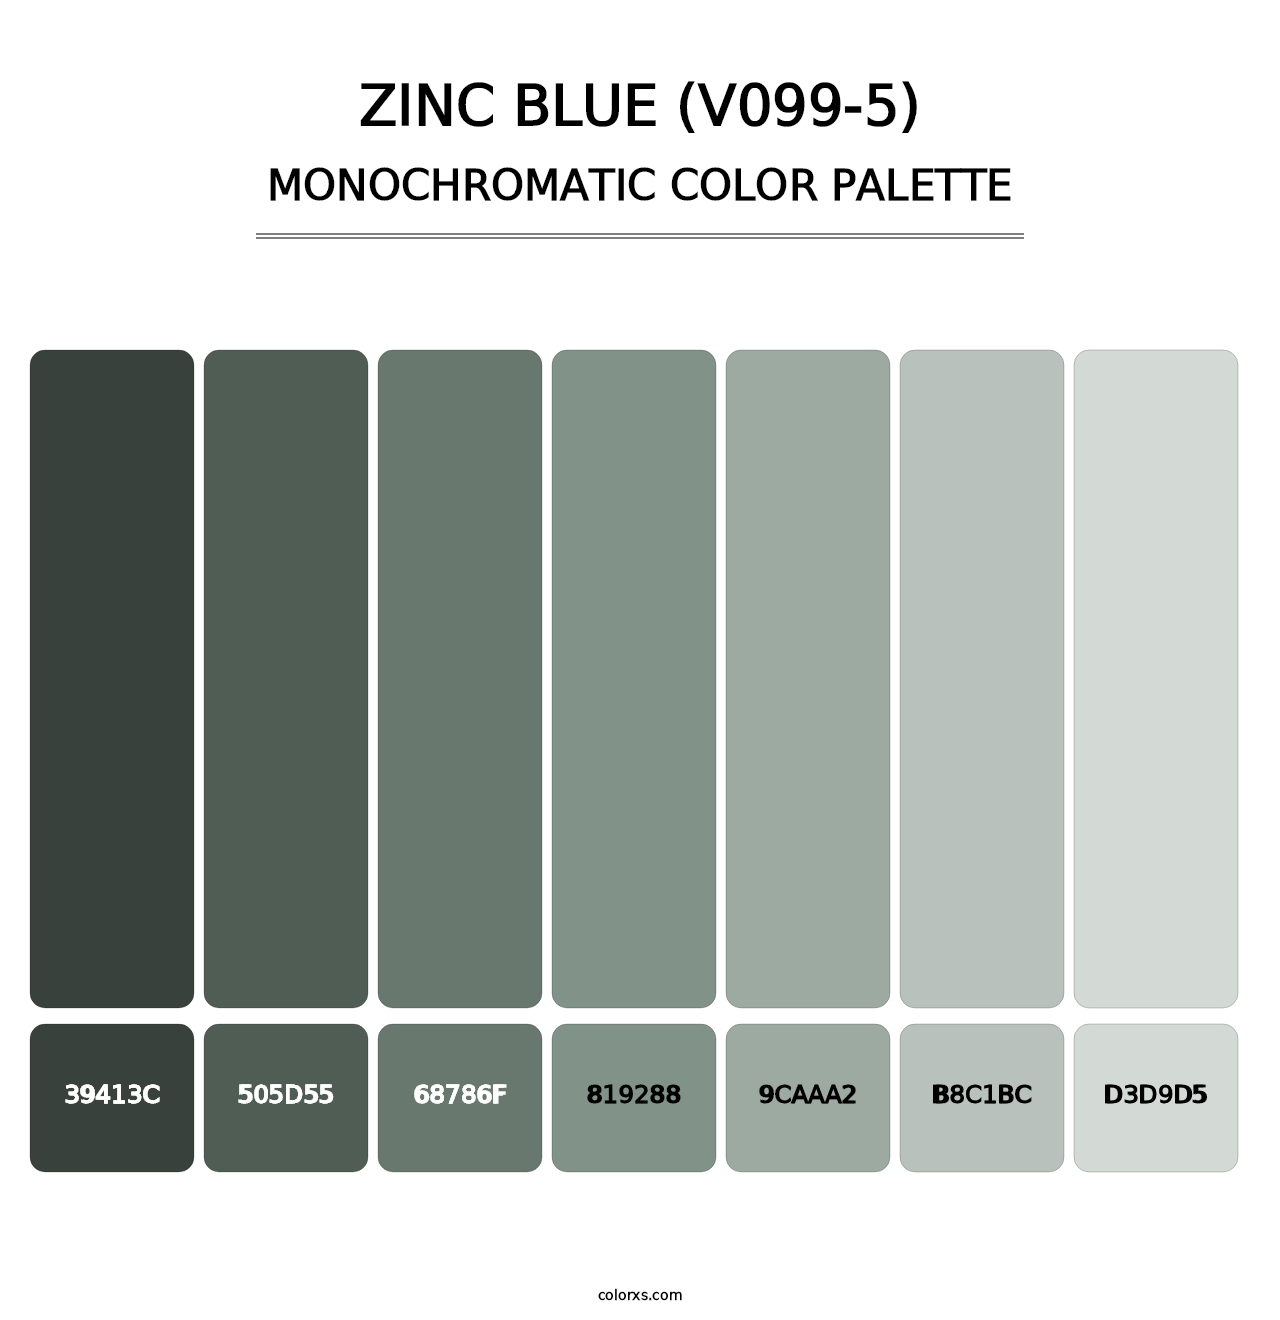 Zinc Blue (V099-5) - Monochromatic Color Palette